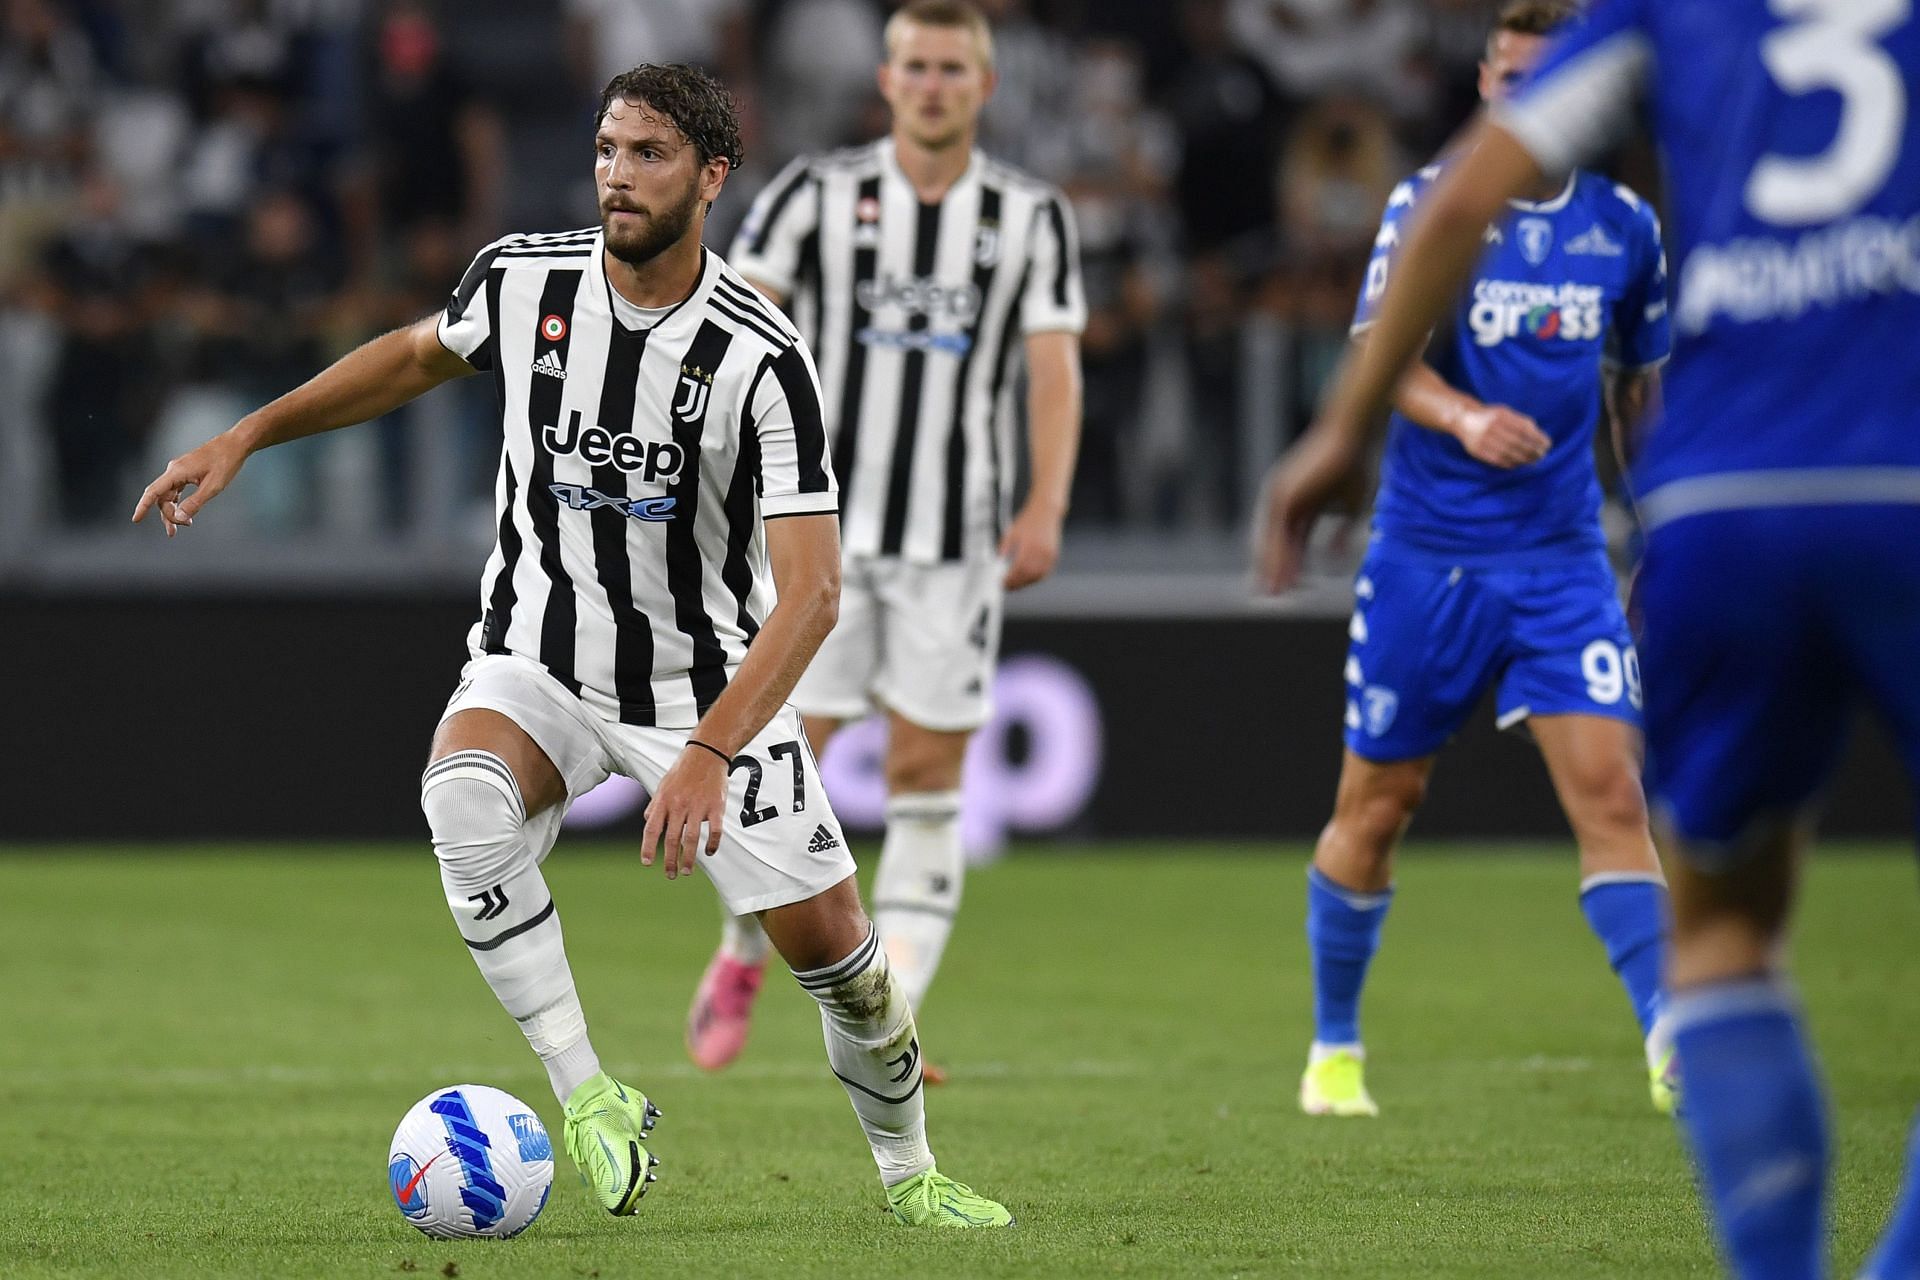 Manuel Locatelli arrived at Juventus this summer.